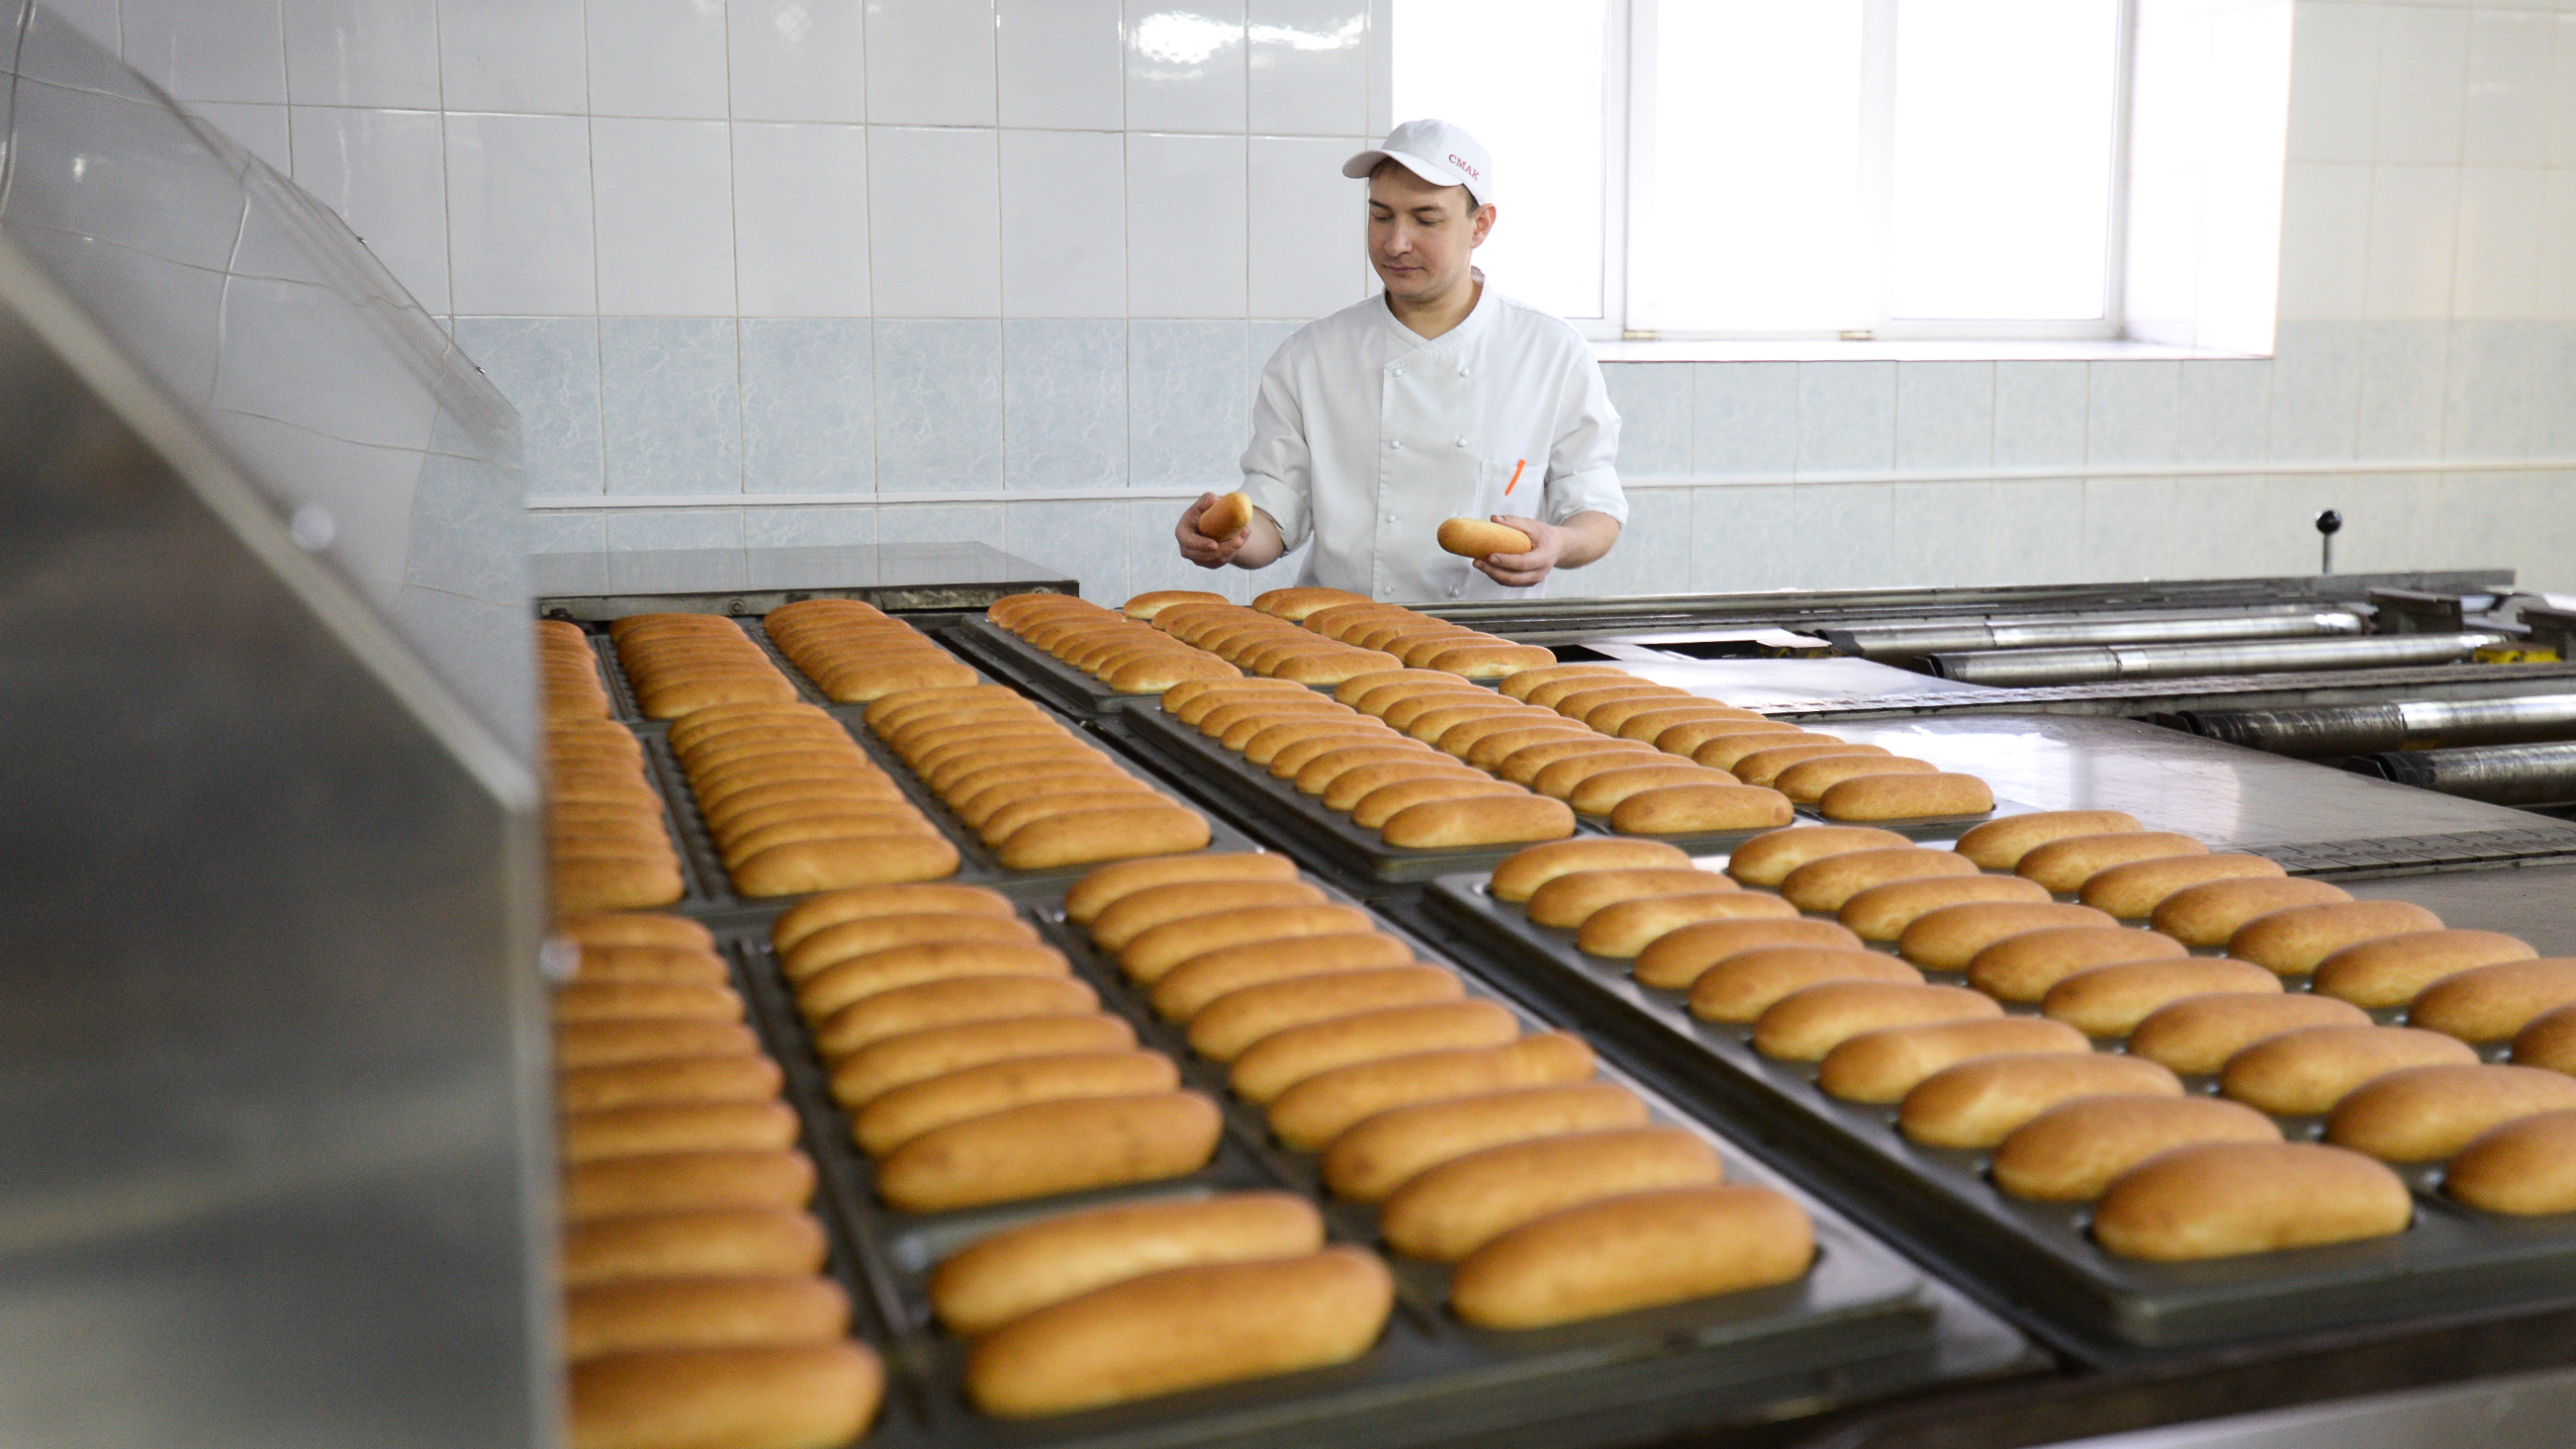 У владельца завода «Смак» потребовали забрать бизнес. Что будет с легендарными булочками?